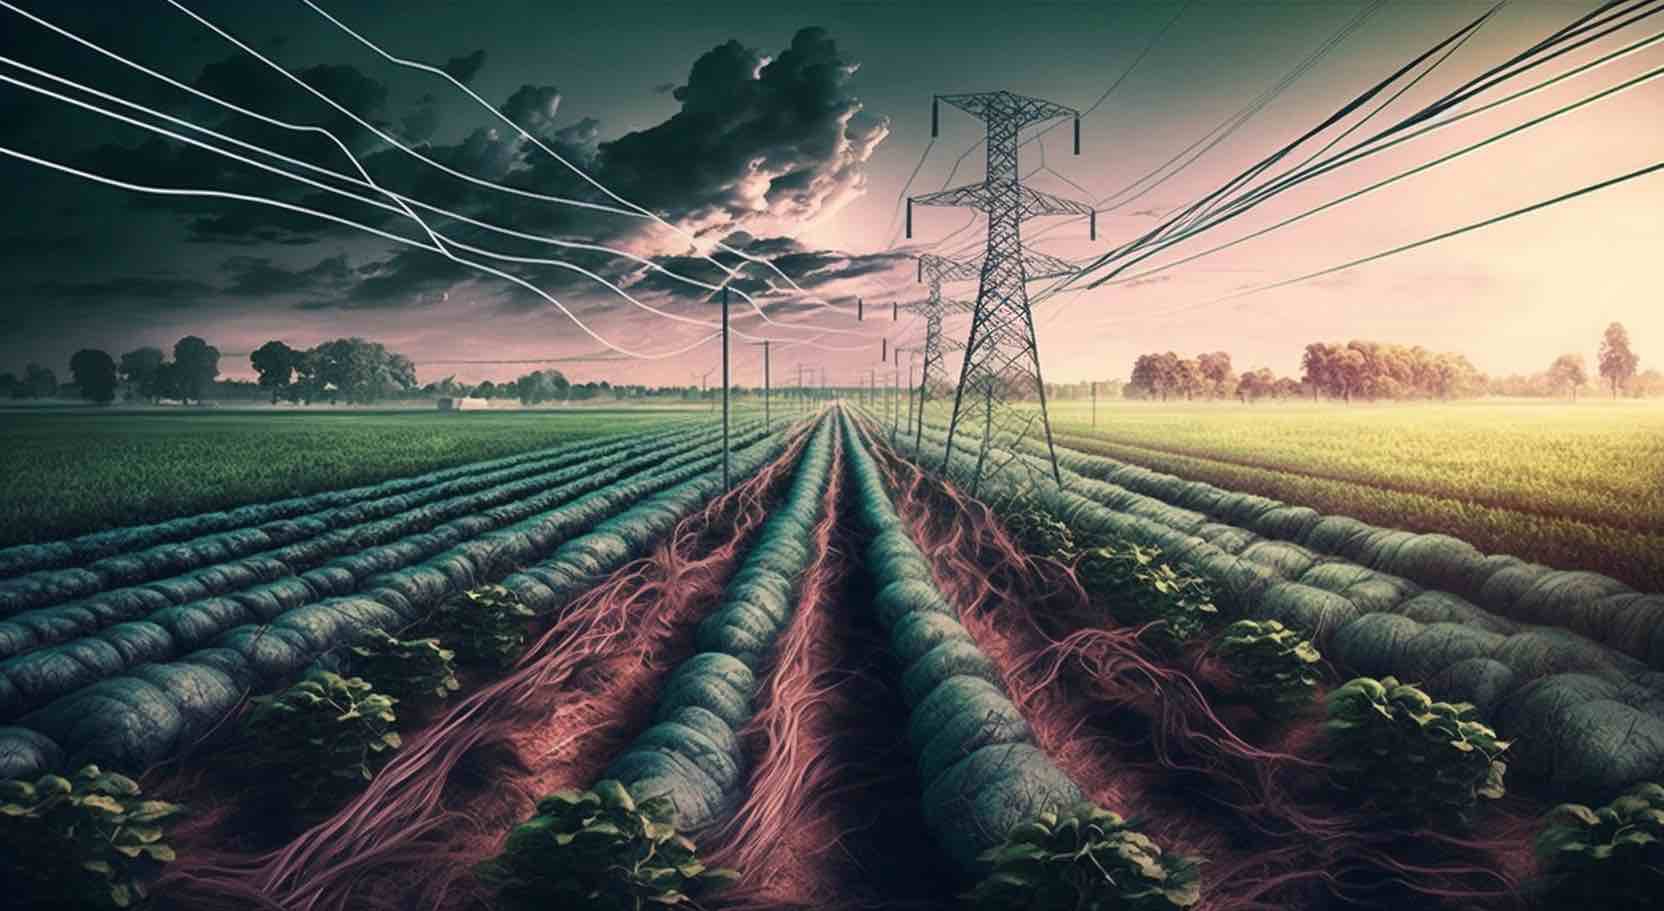 Cultivo eléctrico: ¿un método revolucionario para aumentar los rendimientos y la sostenibilidad?